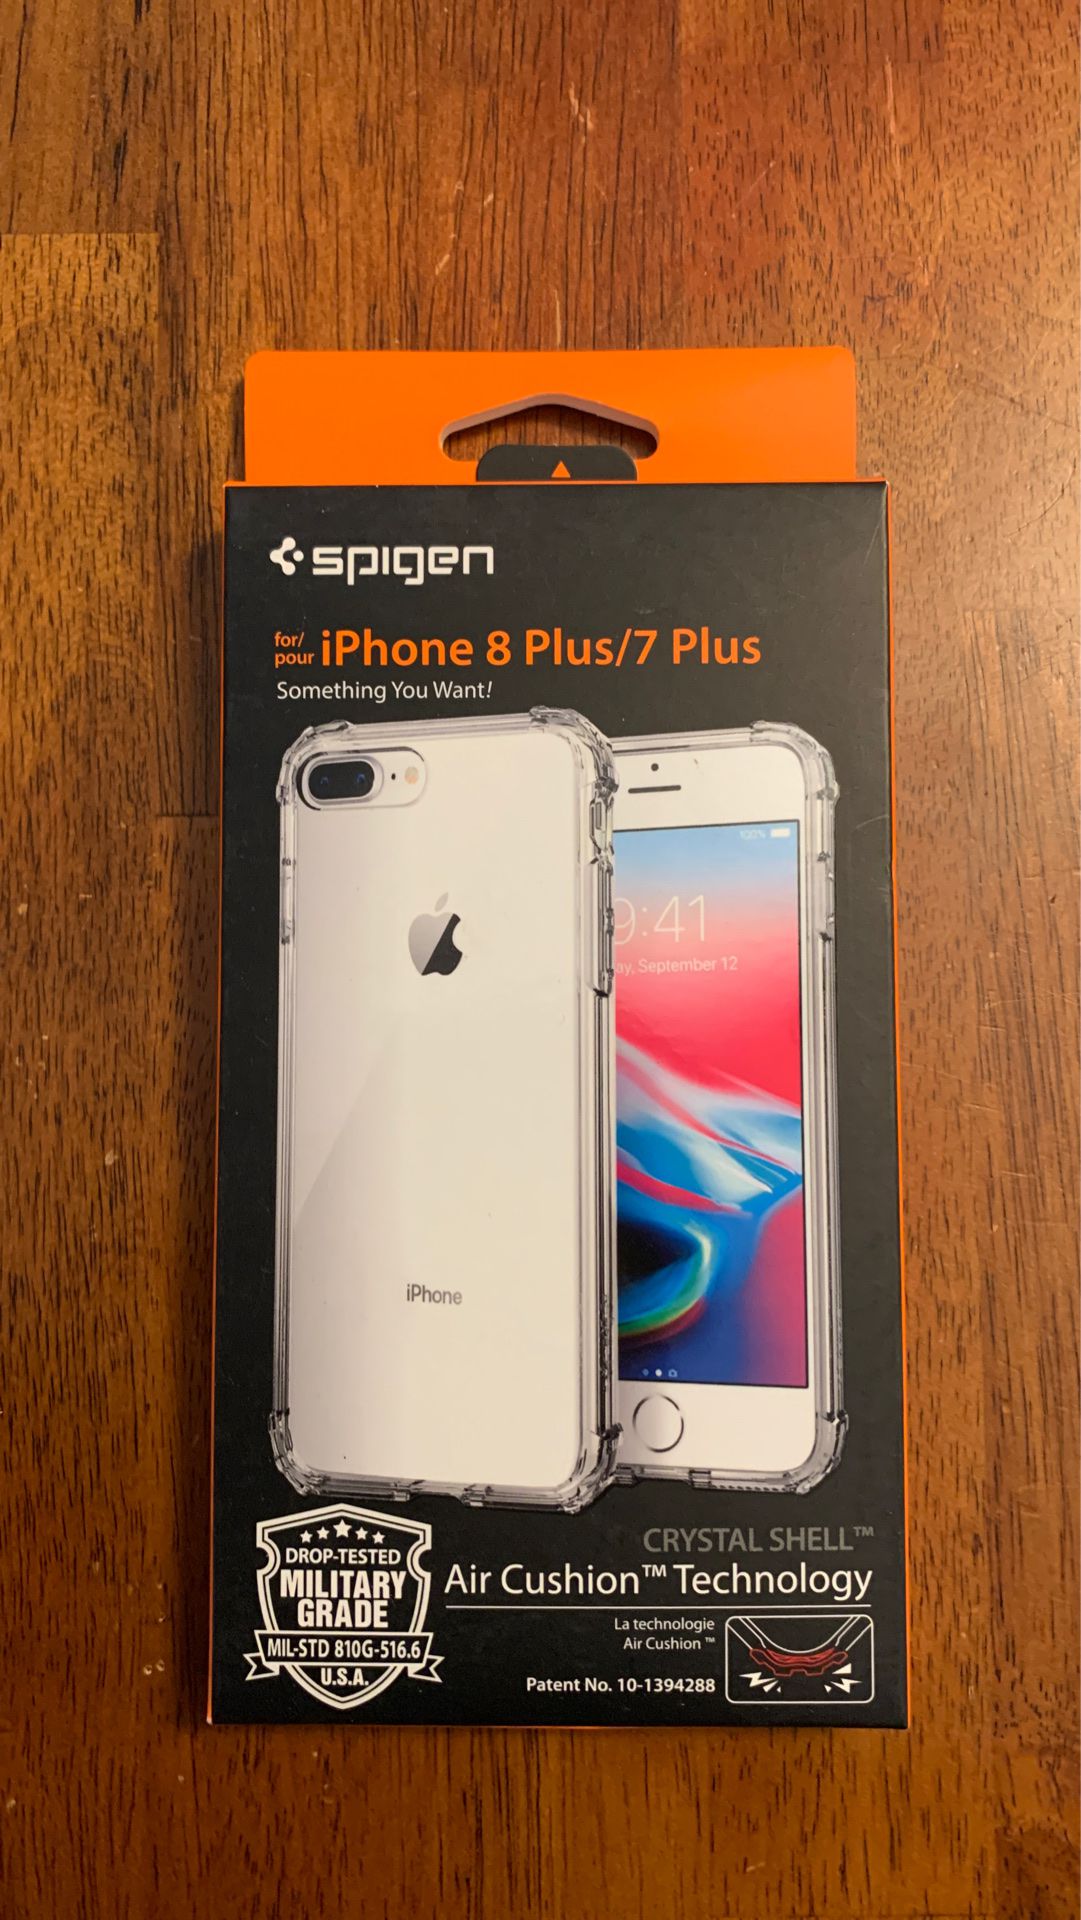 Spigen iPhone 8 Plus / 7 Plus Crystal Shell Case